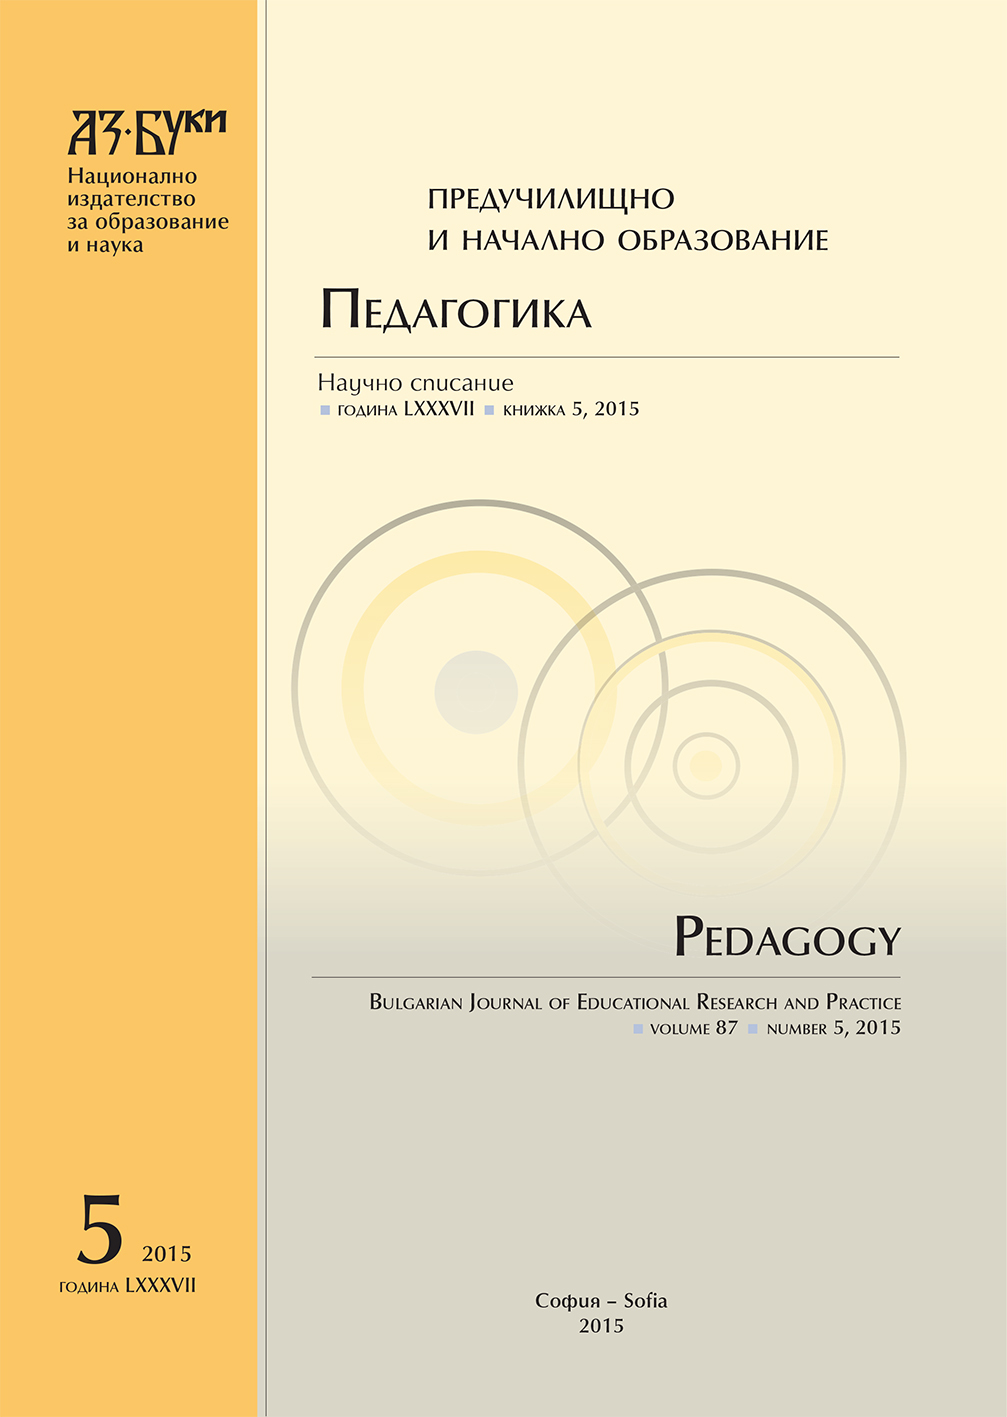 [Educational Process in Konstantin Preslavsky
University of Shumen Cover Image